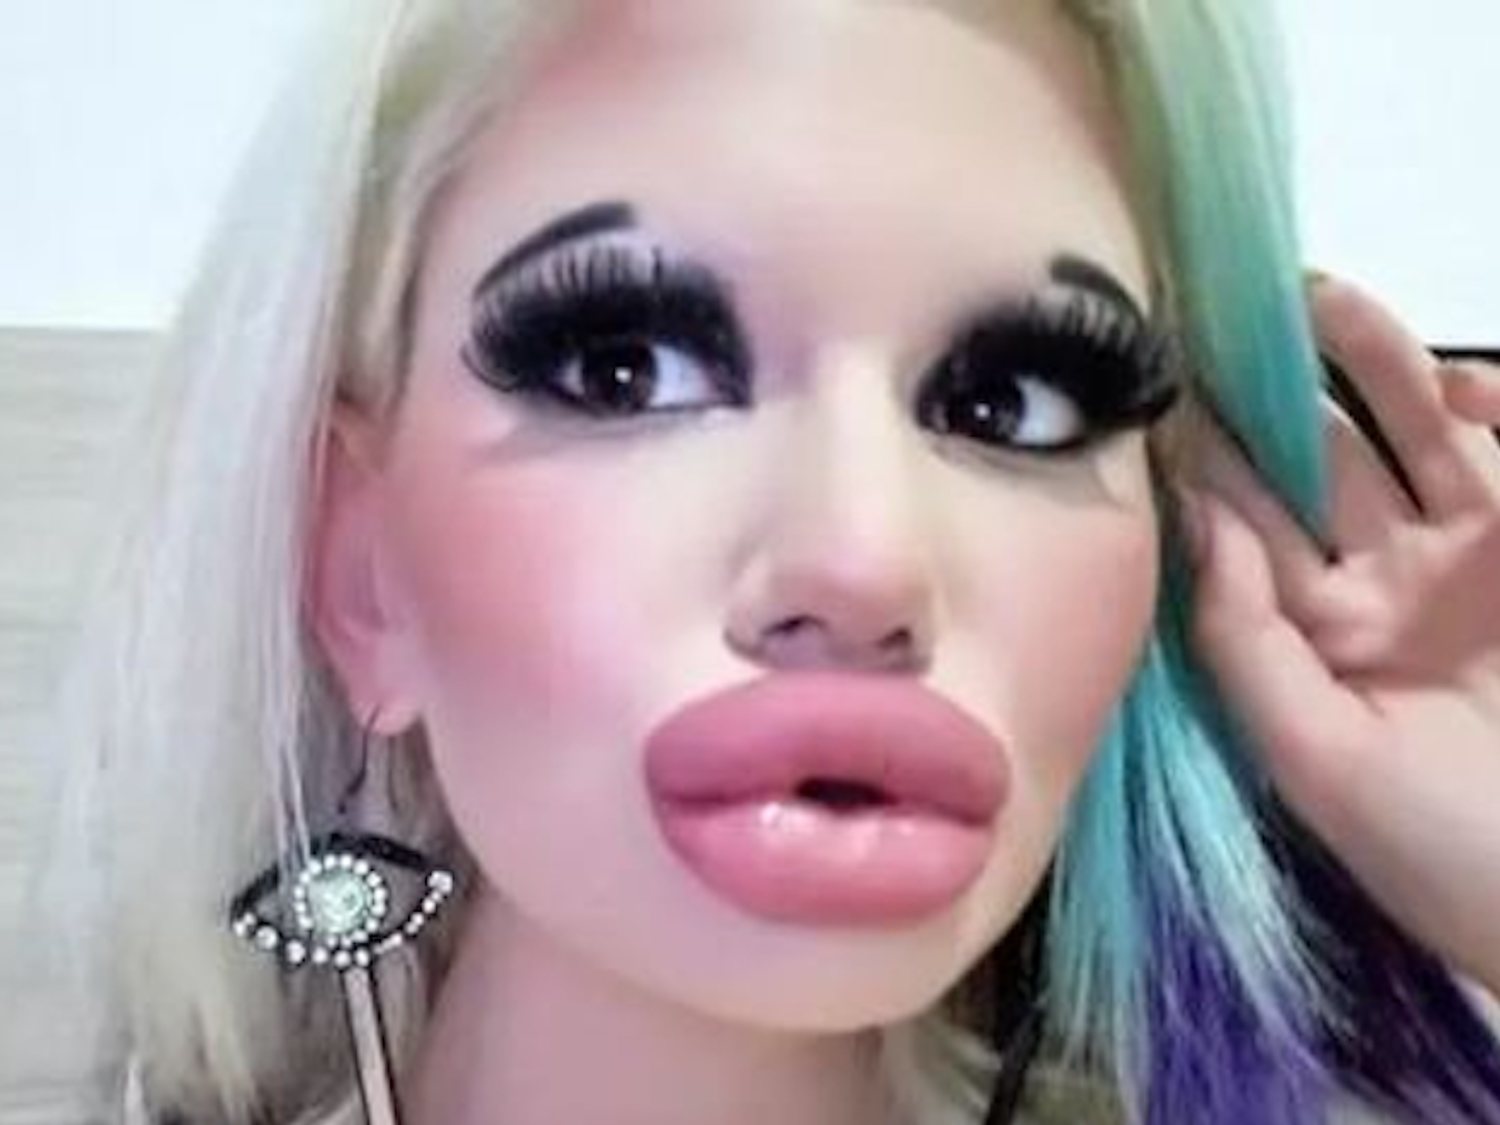 Una mujer triplica el tamaño de sus labios tras operarse quince veces